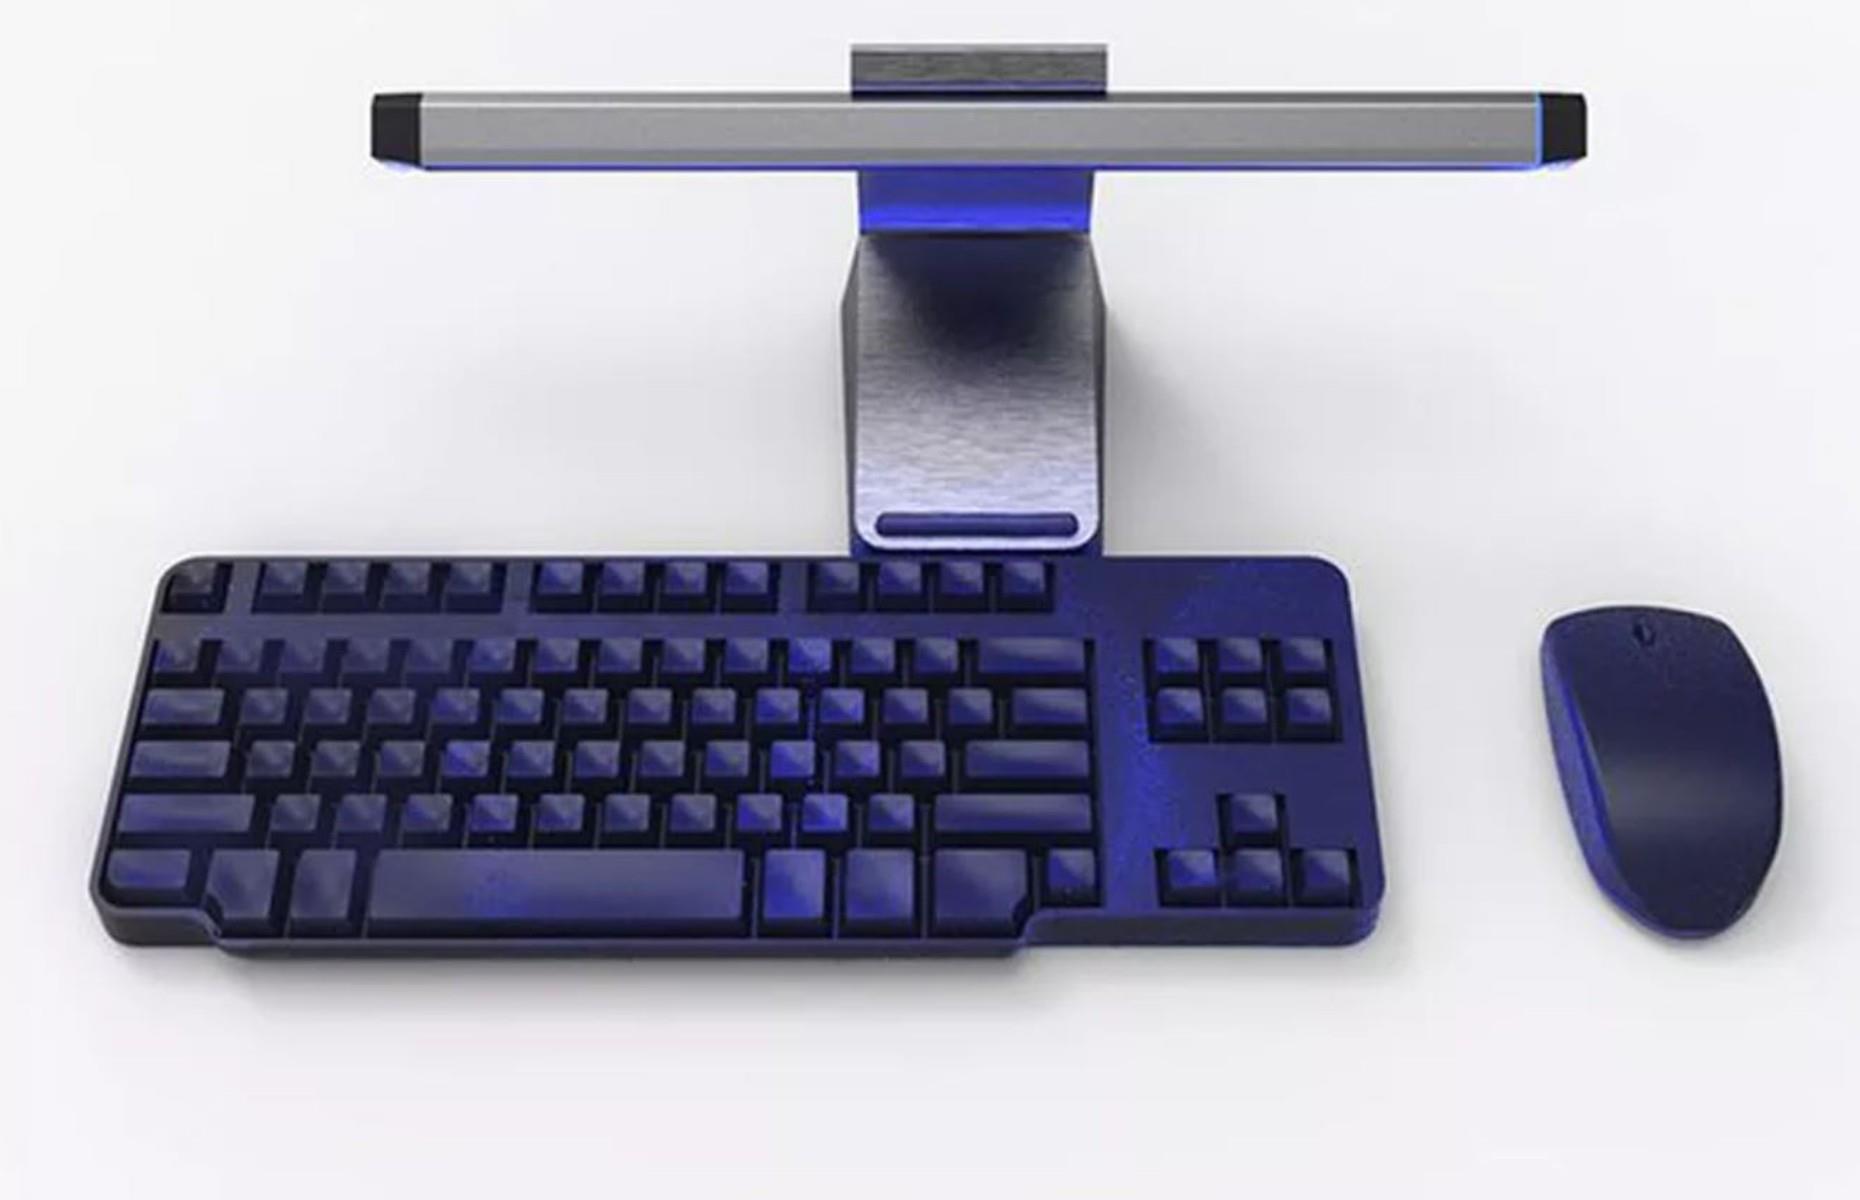 UV keyboard cleaners